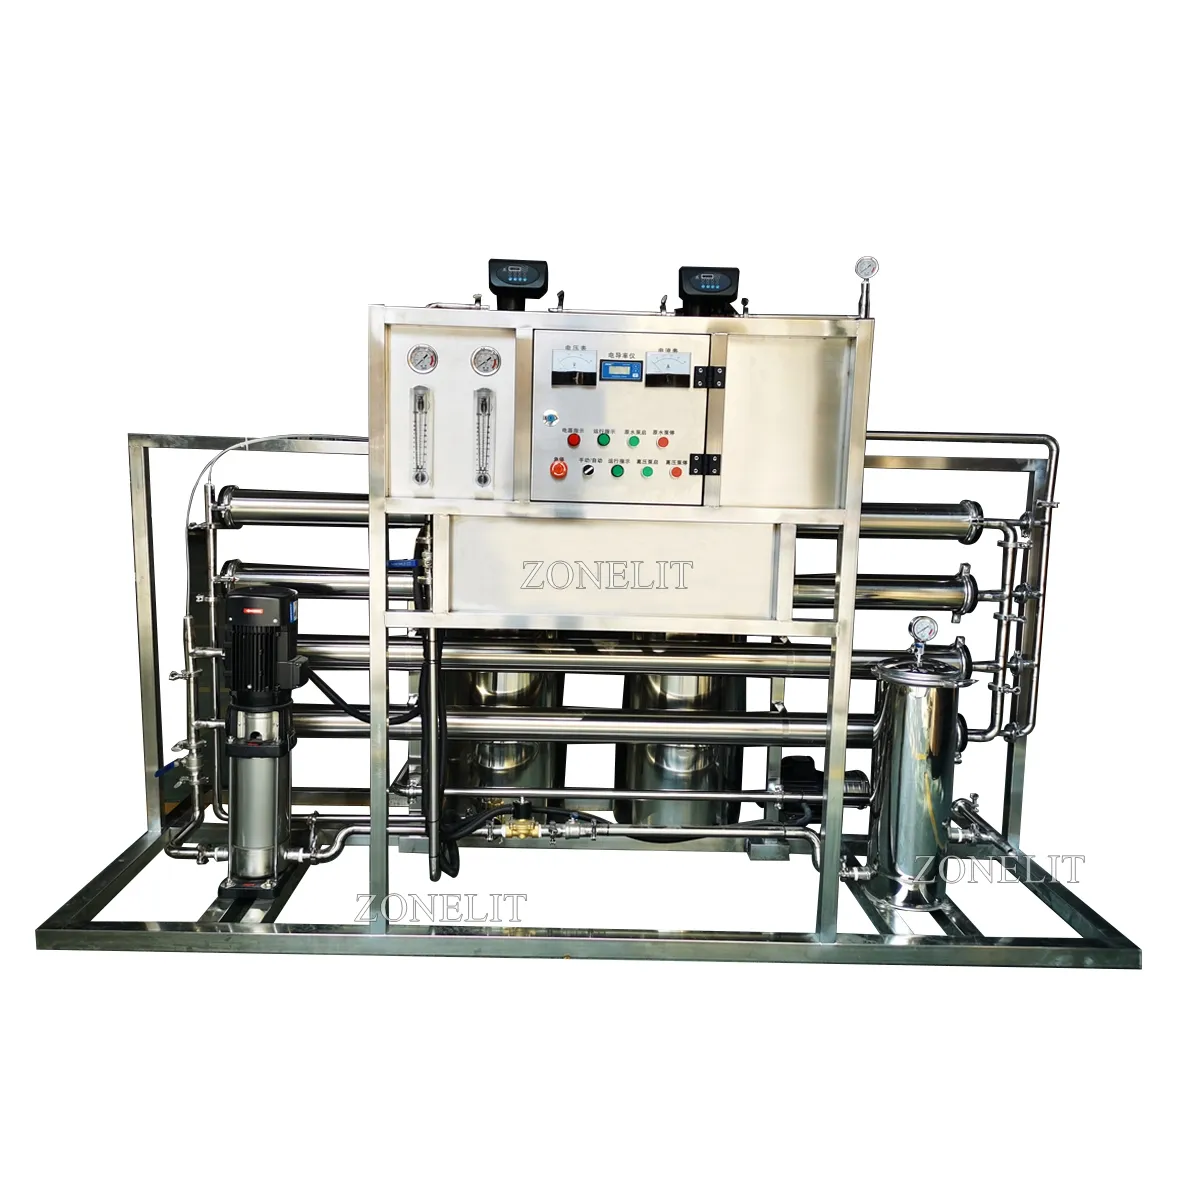 यूवी आरओ जल उपचार मशीनरी उपकरण उपकरण प्रणाली संयंत्र शुद्धिकरण प्रणाली 2000 एलपीएच रिवर्स ऑस्मोसिस